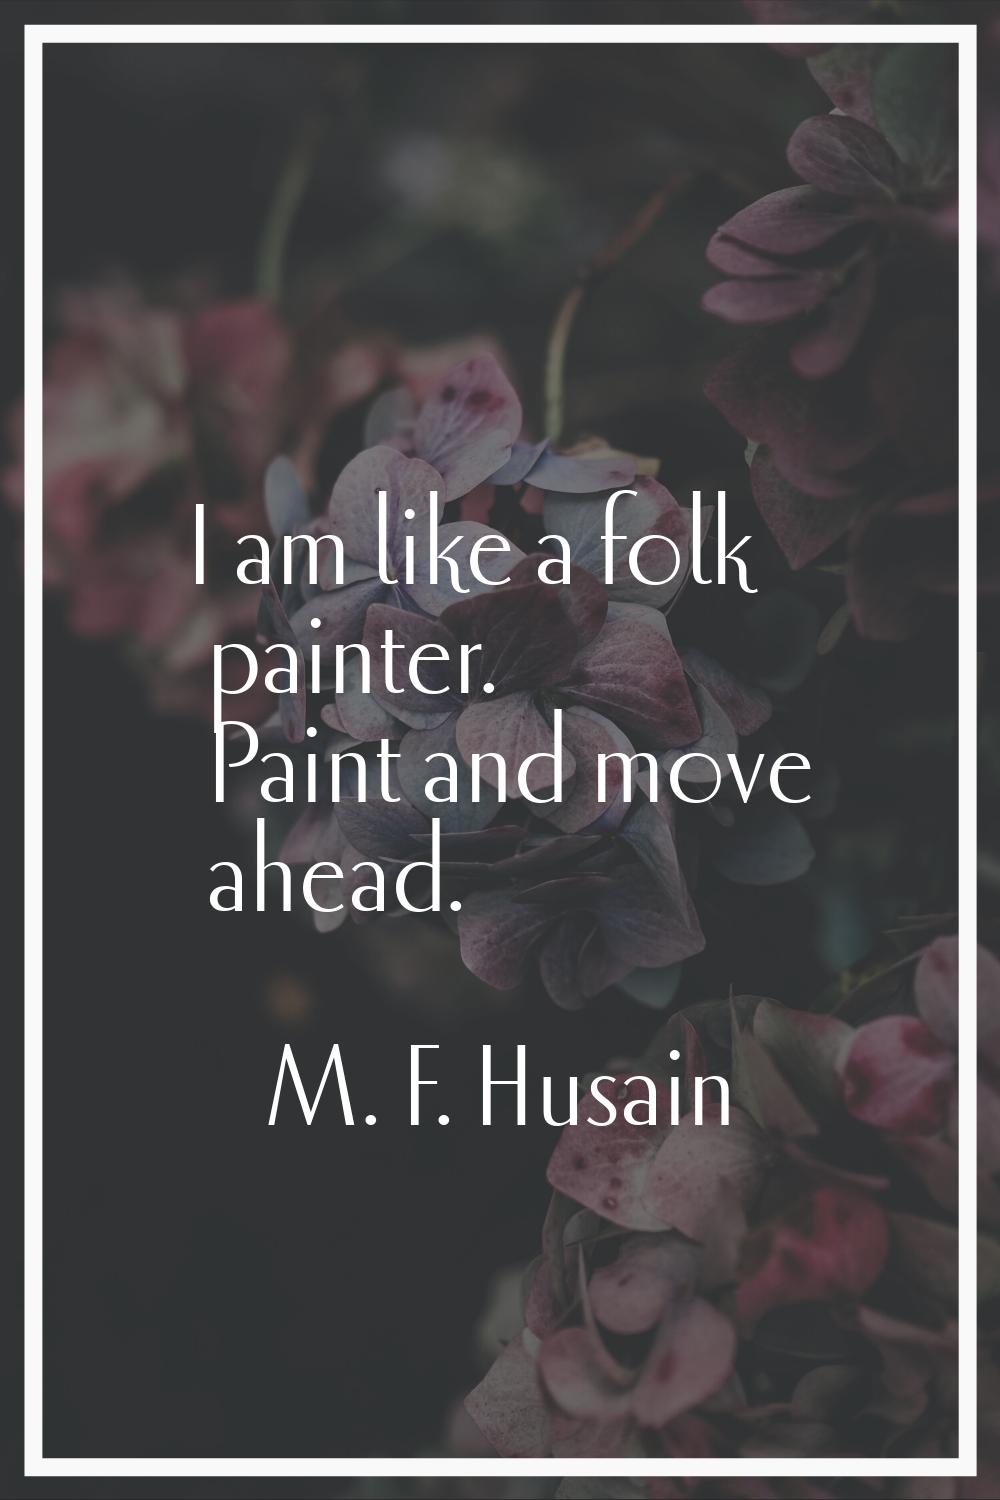 I am like a folk painter. Paint and move ahead.